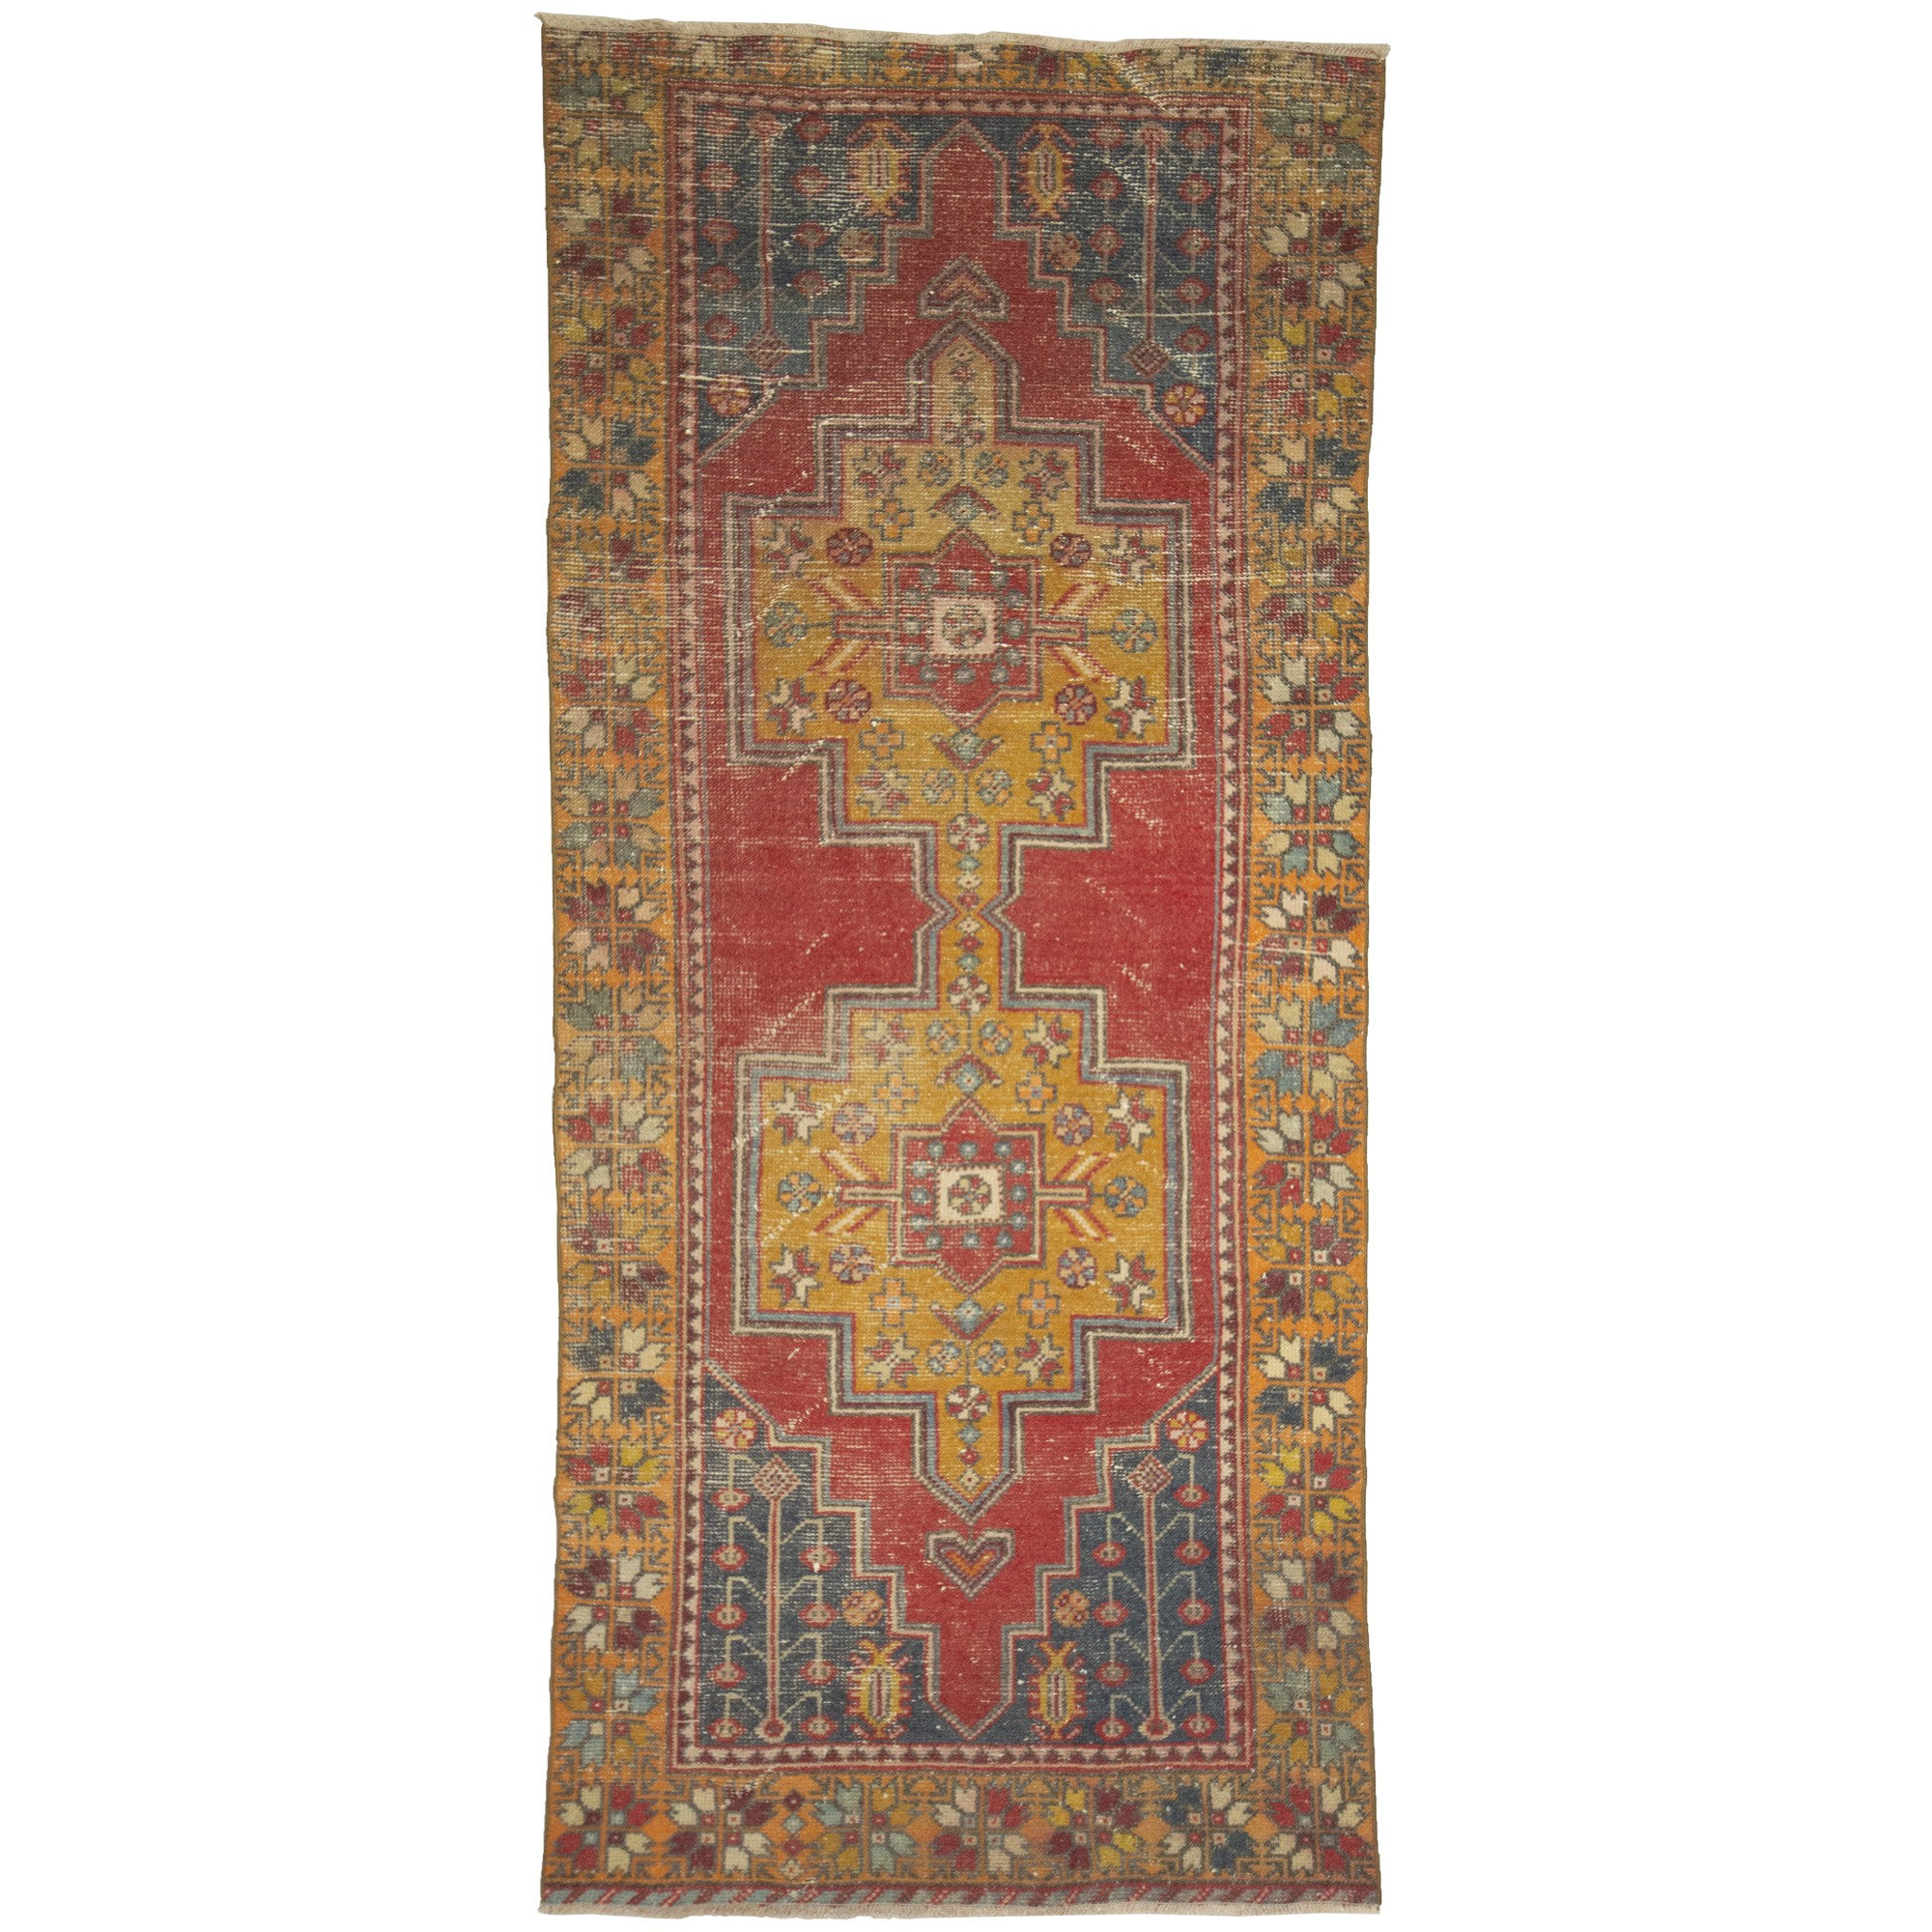 3542  119,270 - Turkish Carpet Rug 